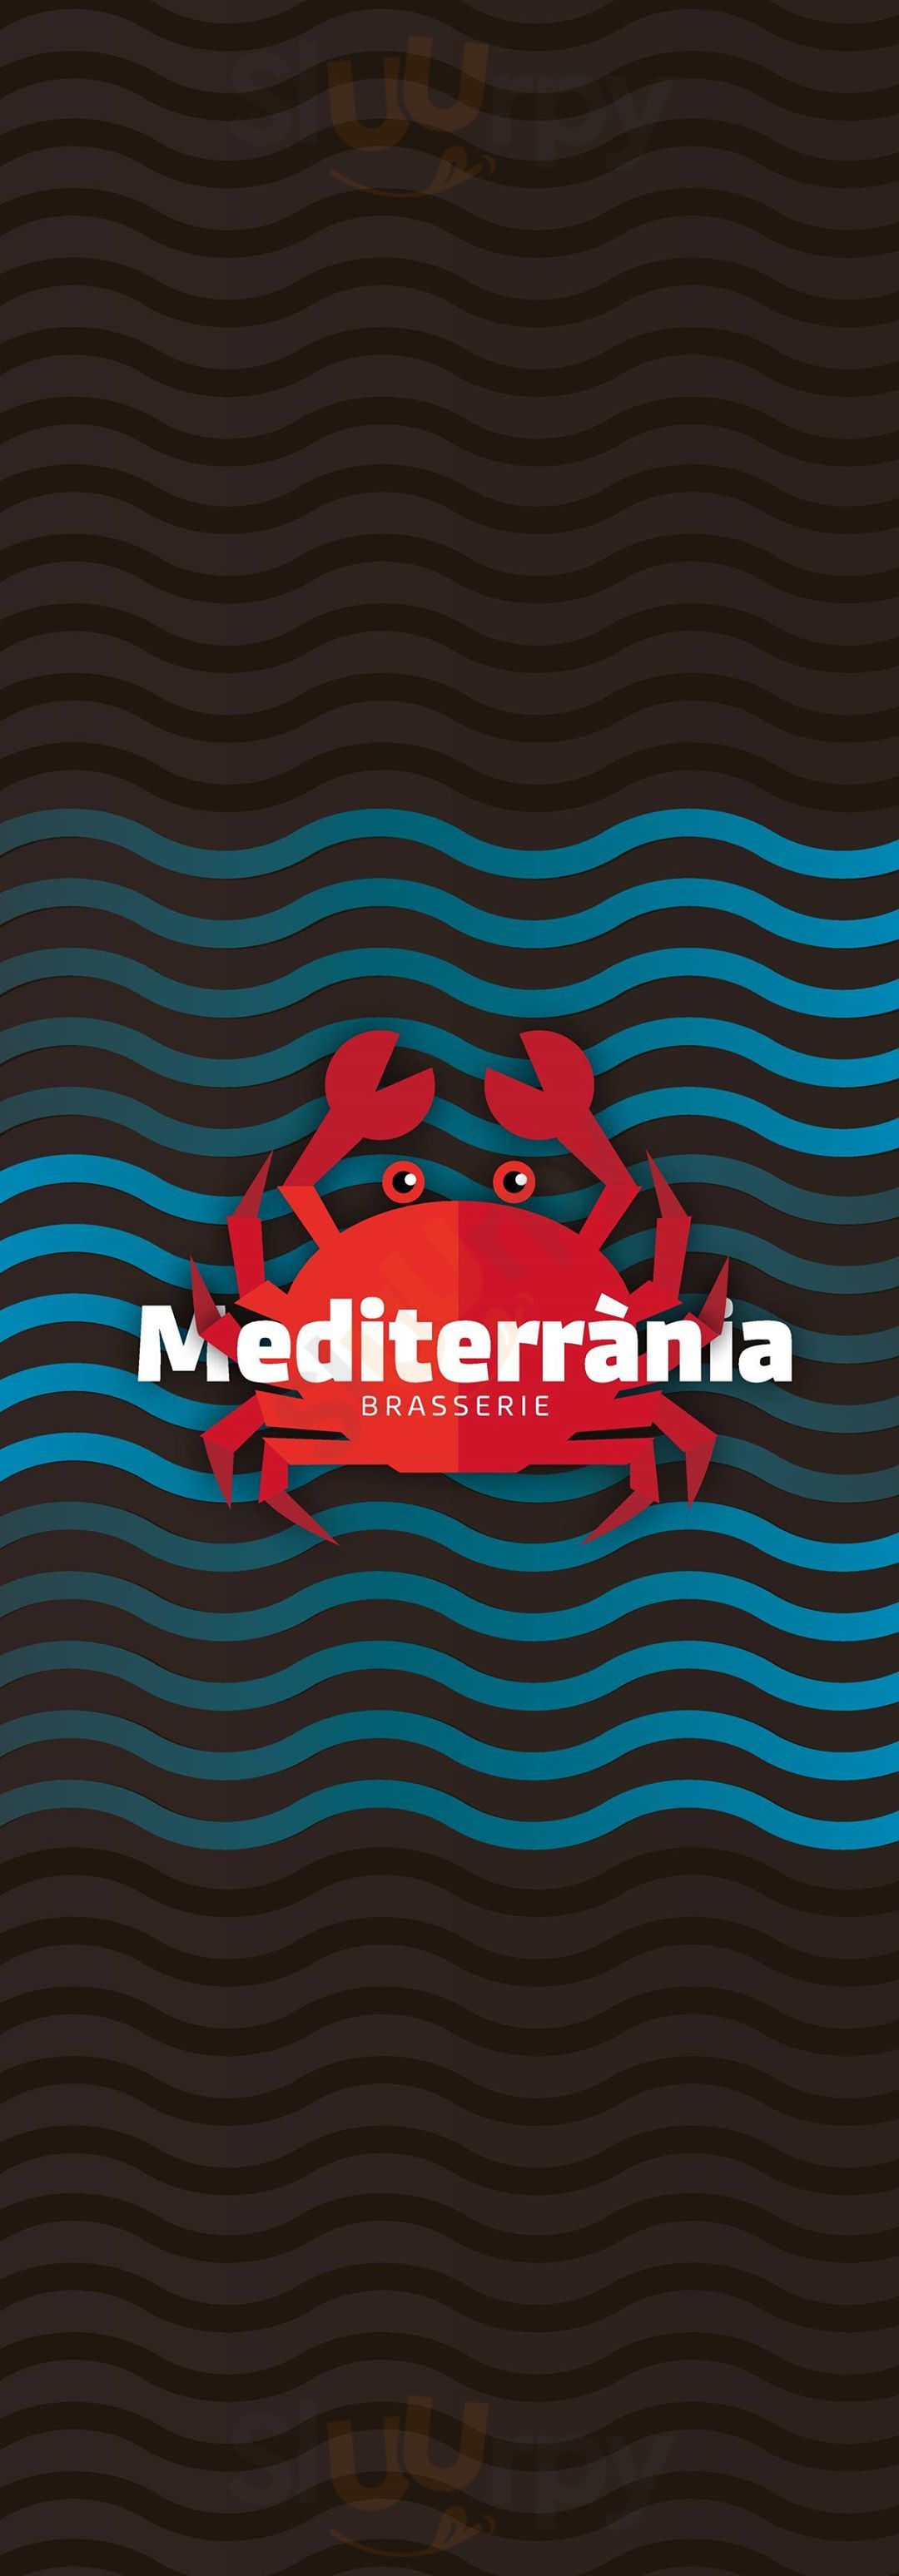 Mediterrània Brasserie Barcelona Menu - 1